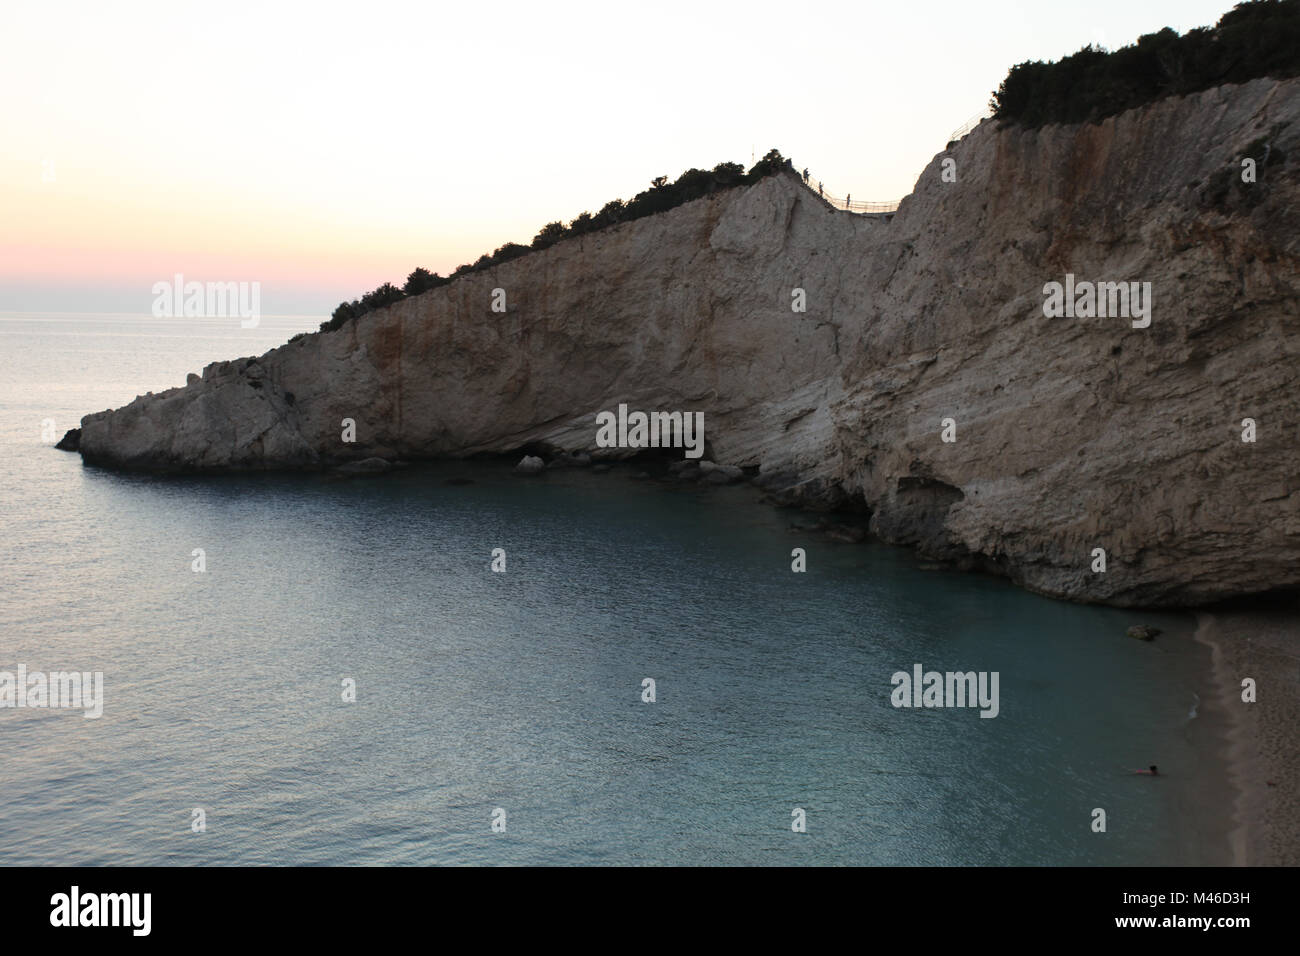 Isola di Lefkada island, Mar Ionio,Grecia Foto Stock